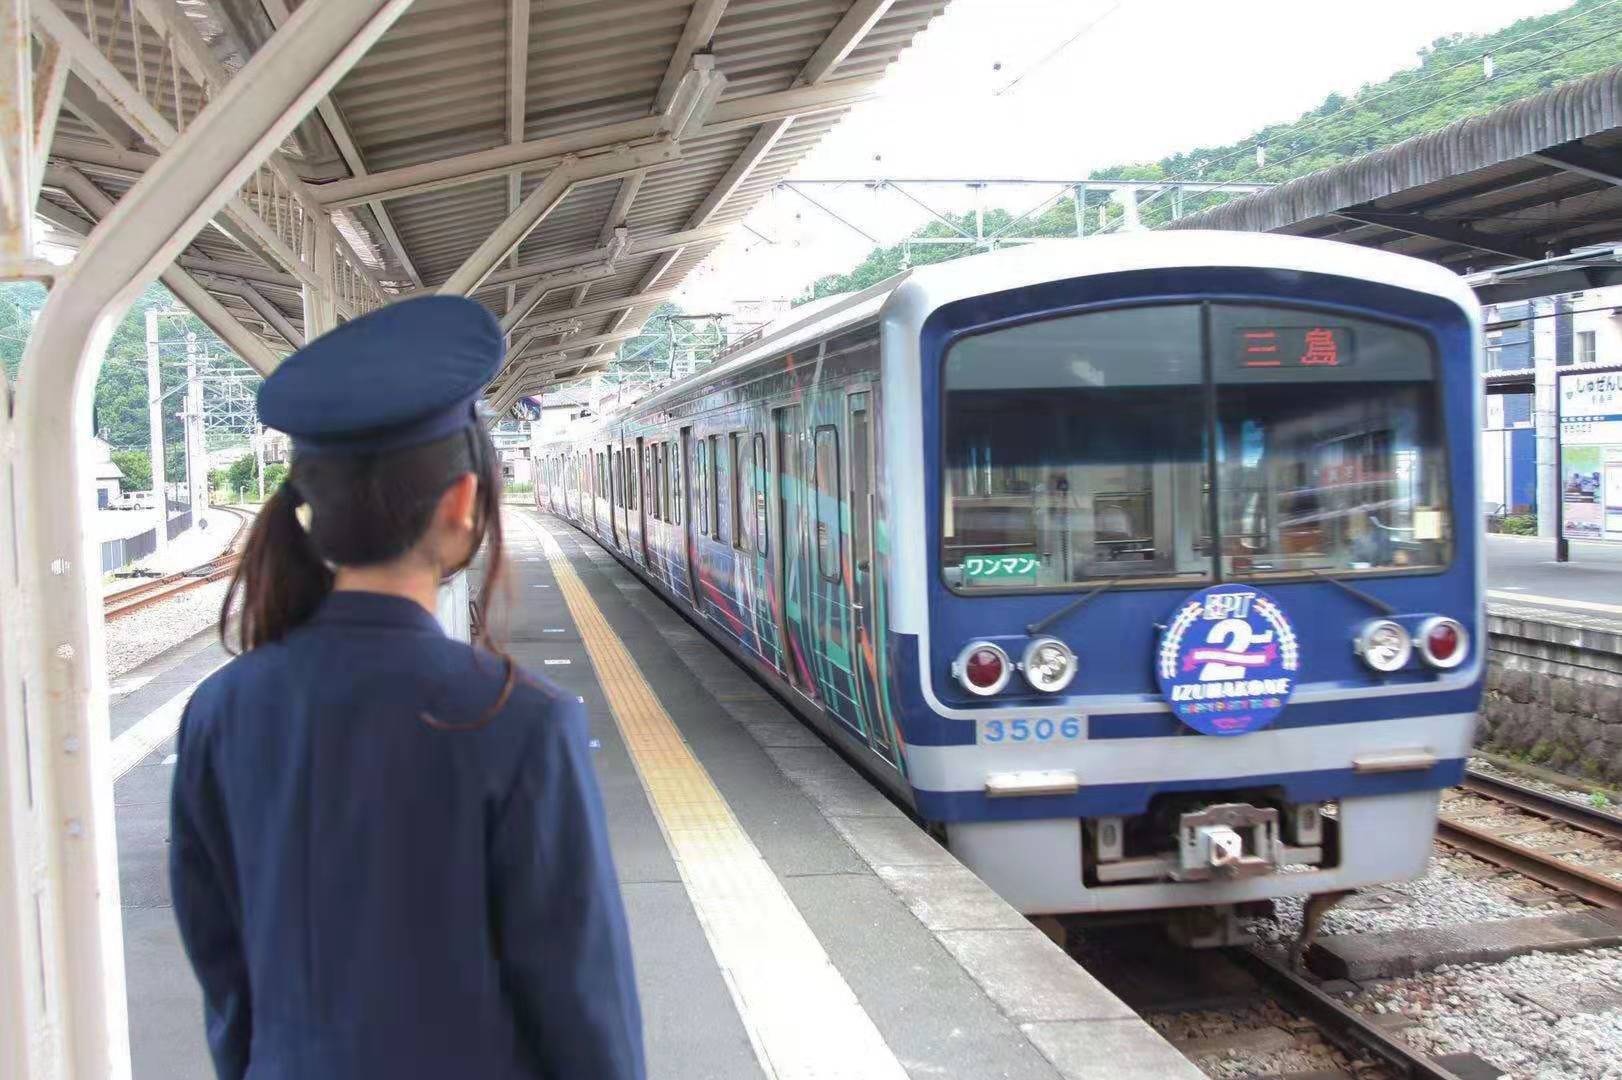 悲報 ラブライブ サンシャイン のラッピング電車年3月に運行終了へ 伊豆箱根鉄道 Japan Railway Com